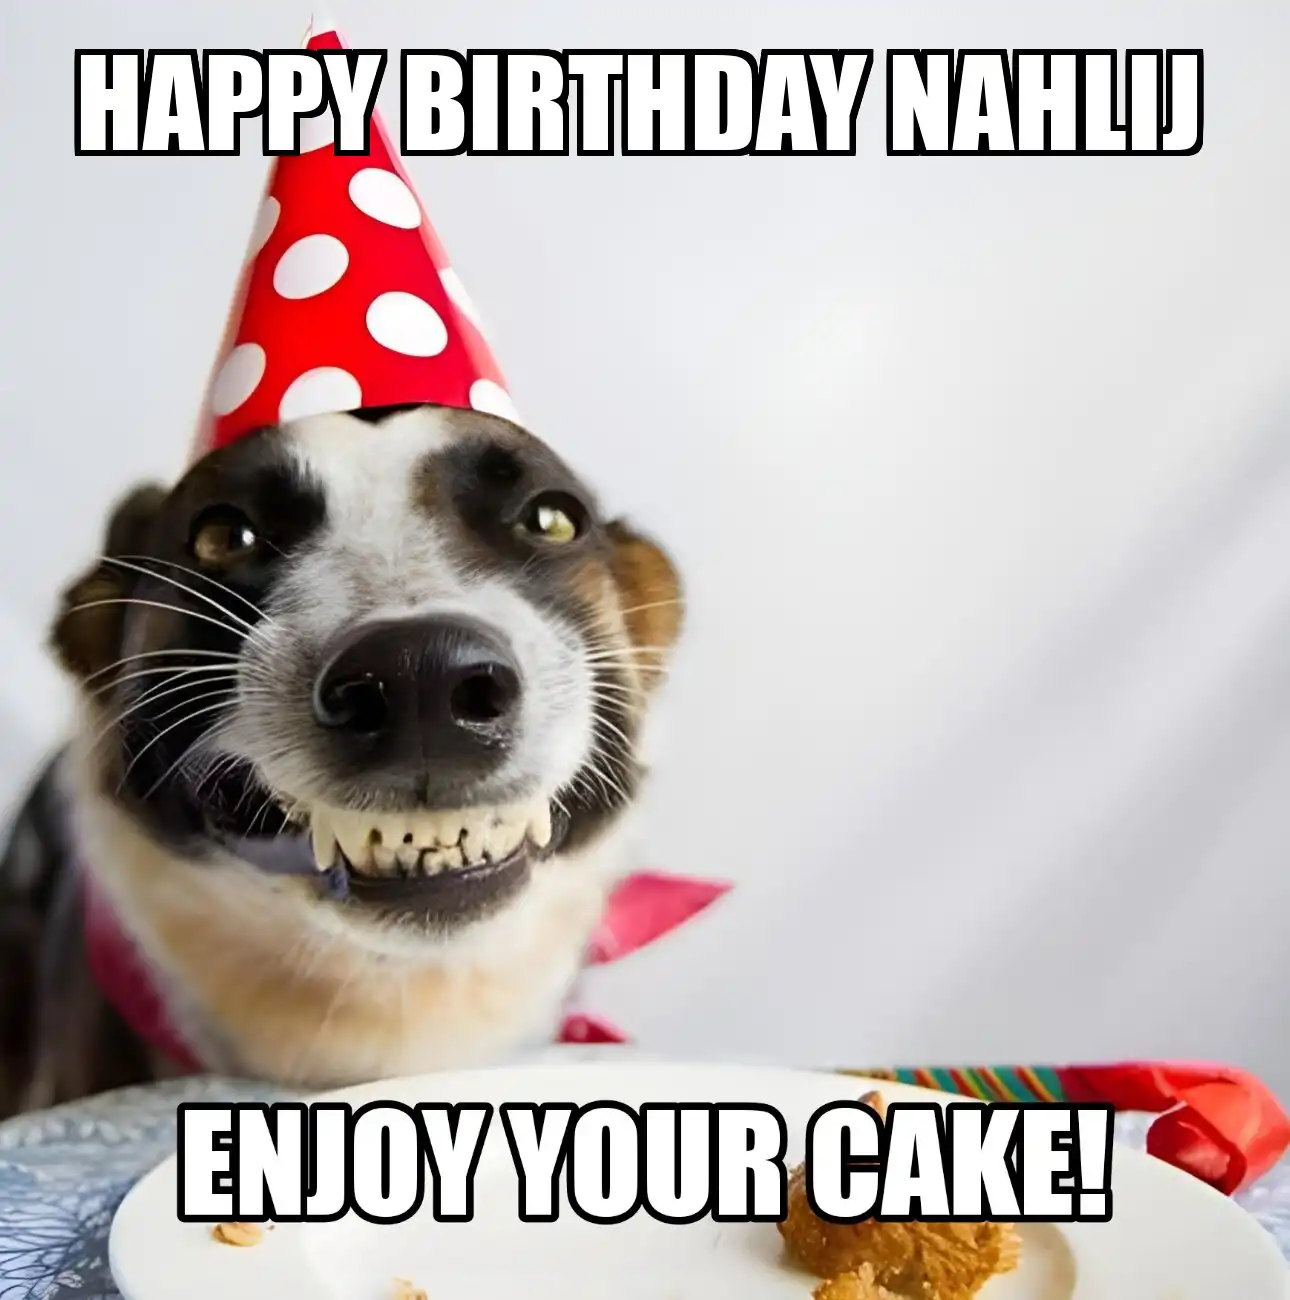 Happy Birthday Nahlij Enjoy Your Cake Dog Meme